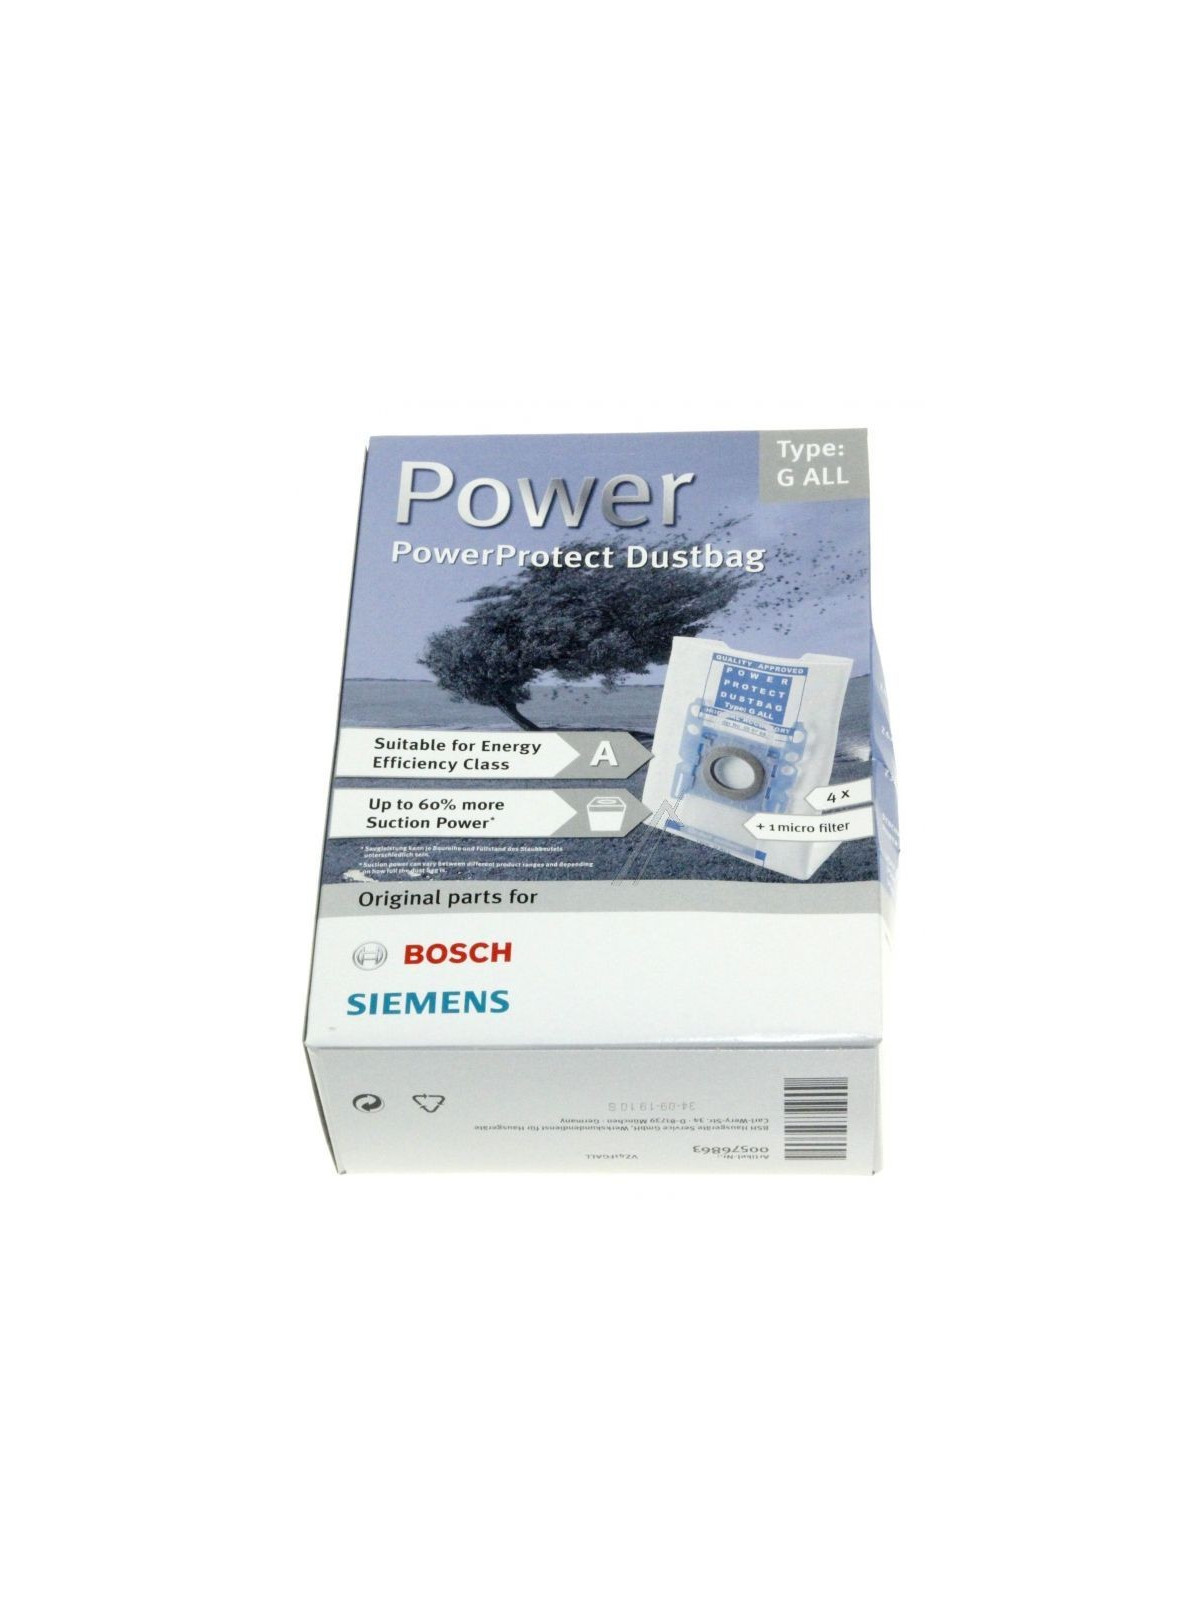 Type G ALL - Sac PowerProtect Bosch / Siemens - Aspirateur